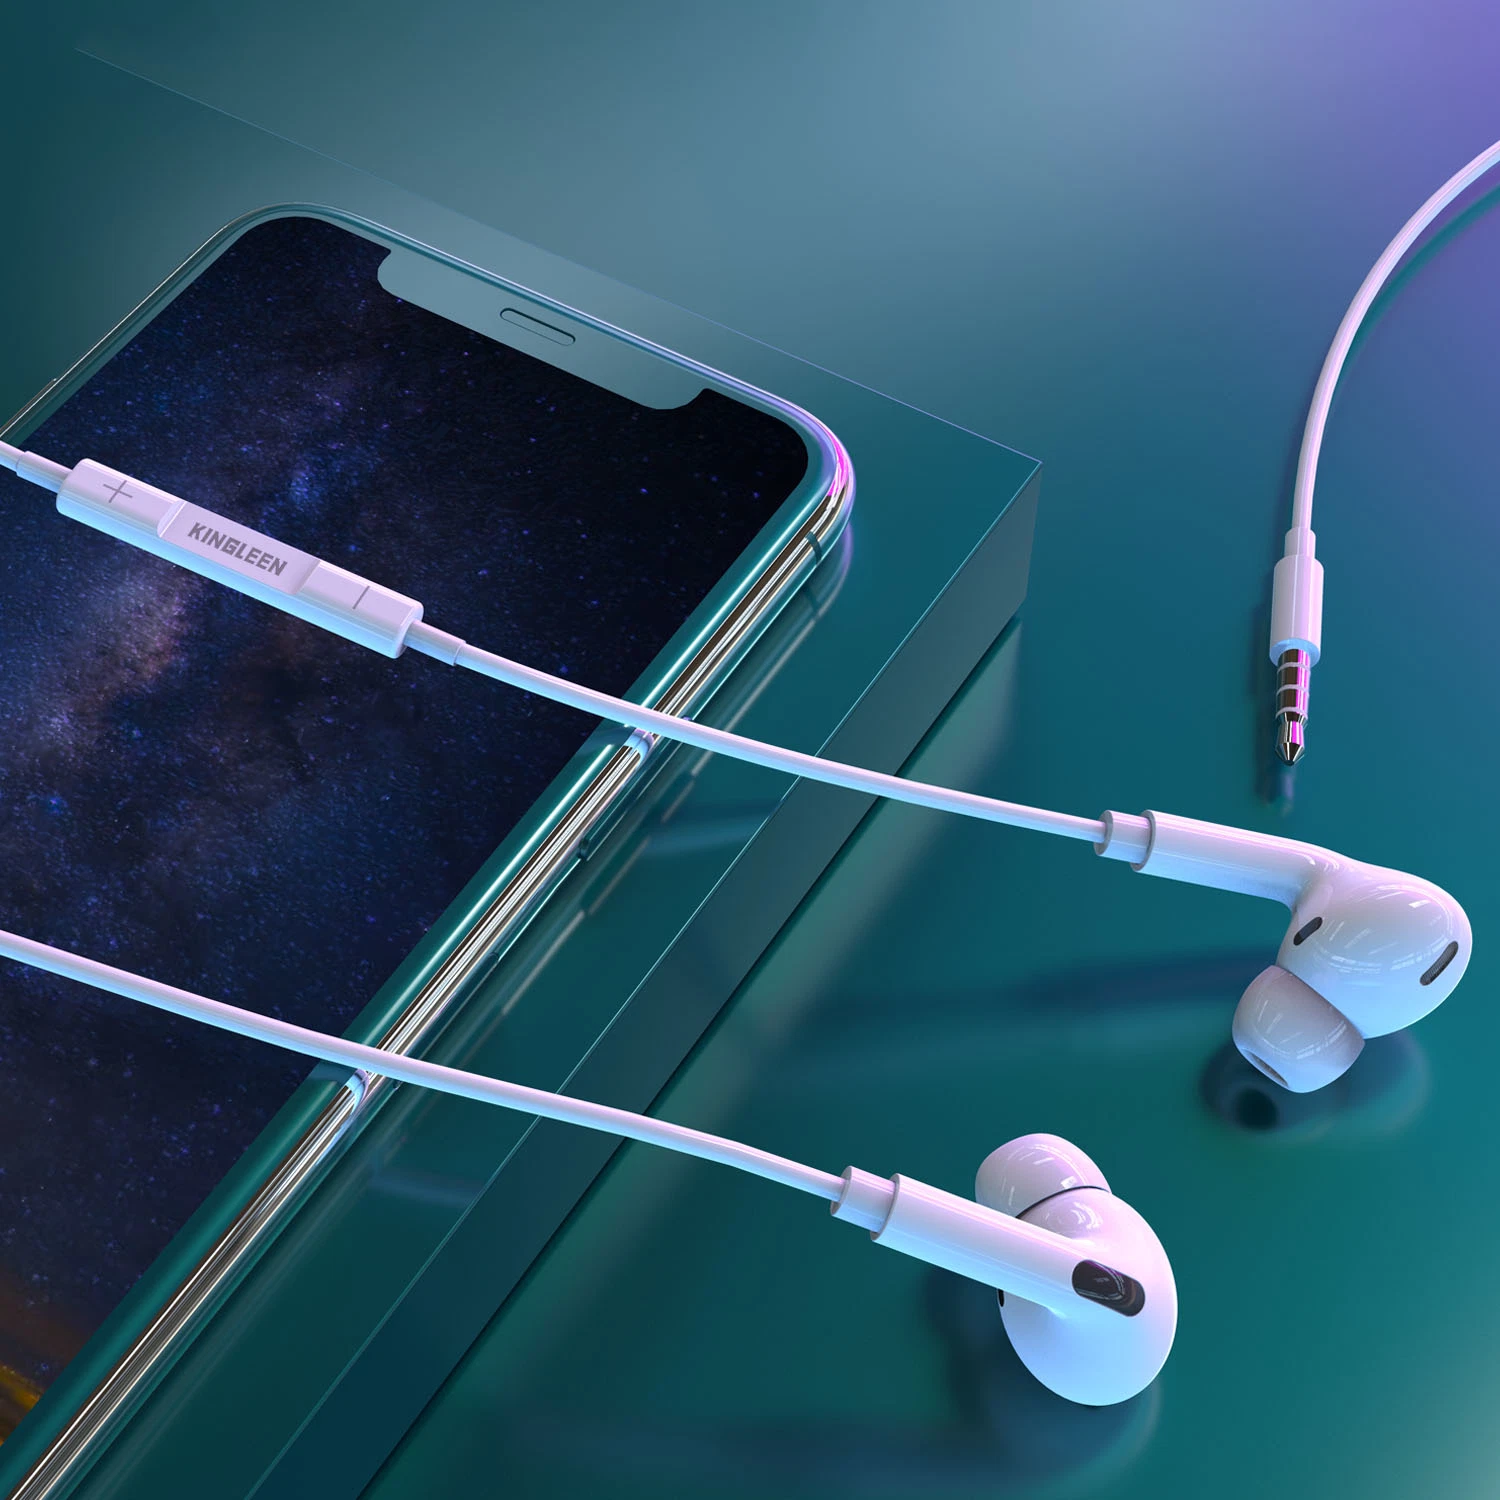 La música llamada control de volumen auriculares con cable de 3,5 mm para teléfono móvil y otros dispositivos.